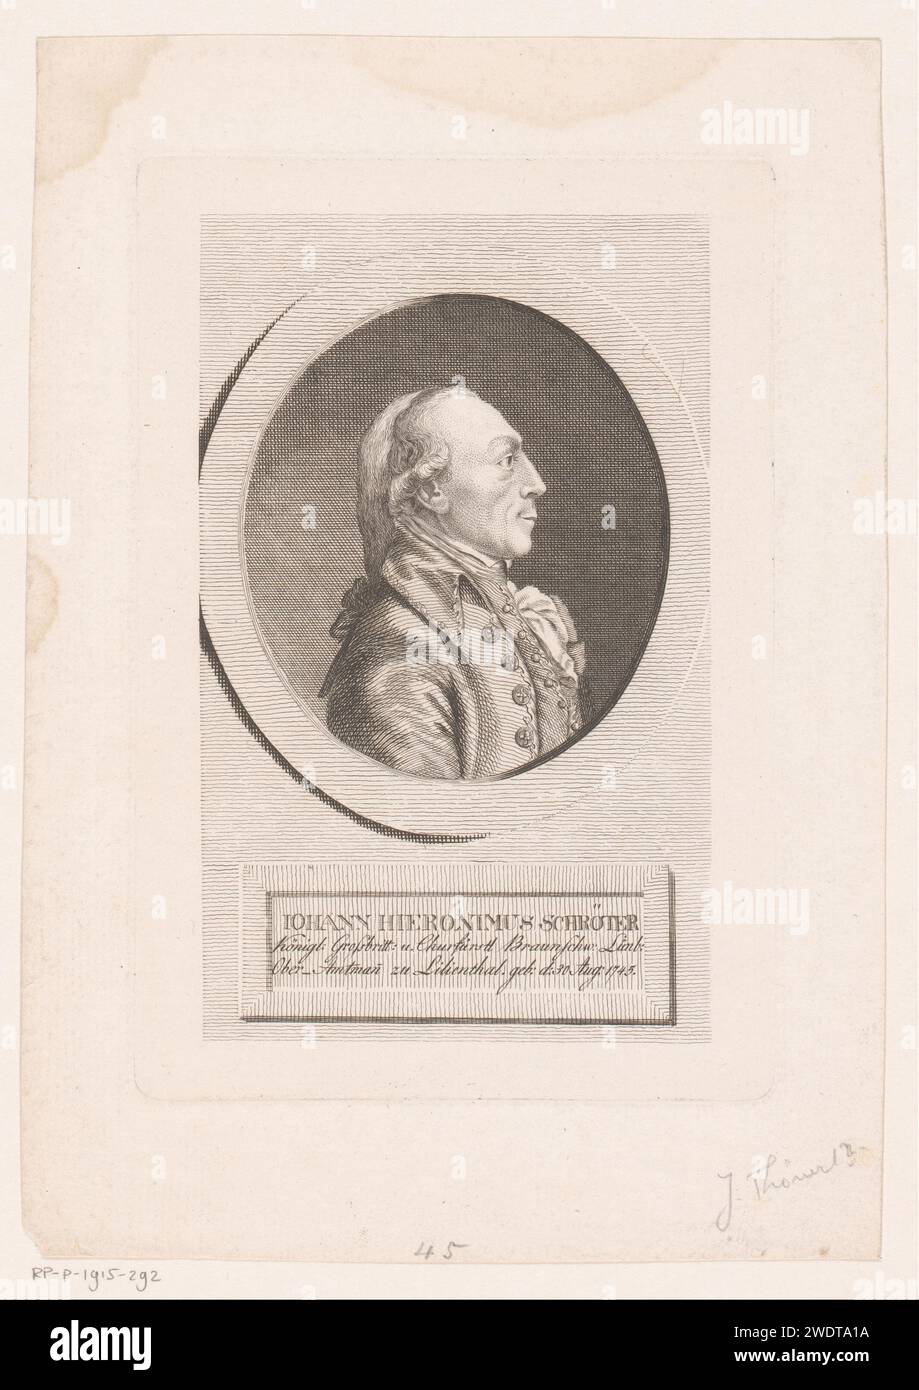 Porträt van Johann Hieronymus Schröter, Eberhard Siegfried Henne (evtl.), 1781 - 1828 gedrucktes deutsches Papier, das historische Personen graviert Stockfoto